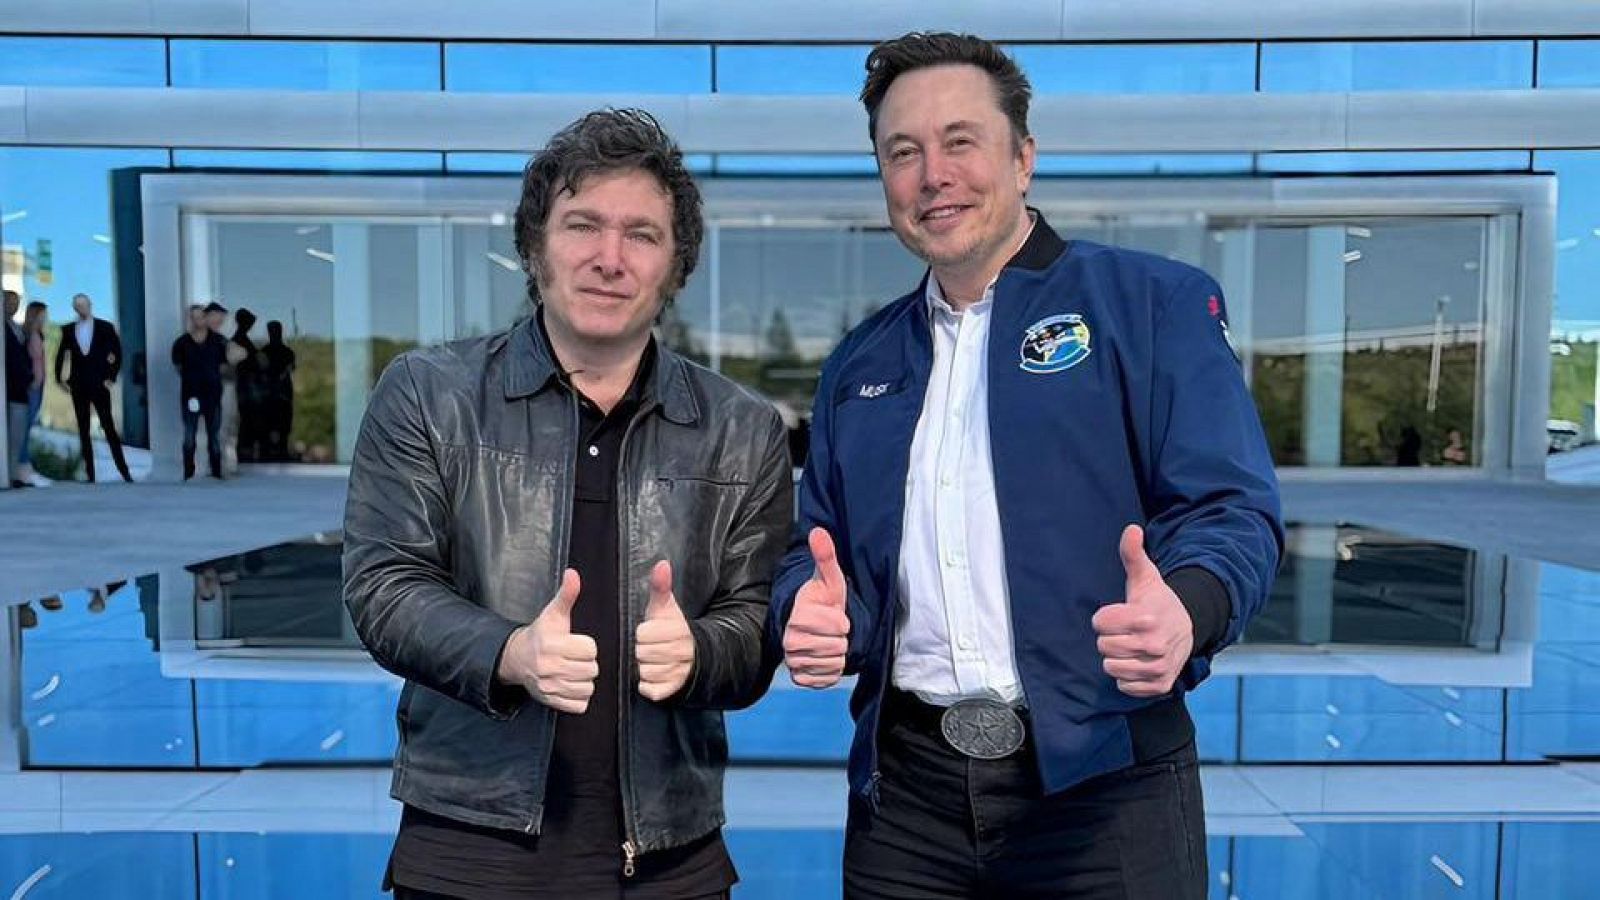 El presidente de Argentina visita una fábrica de Tesla en Texas